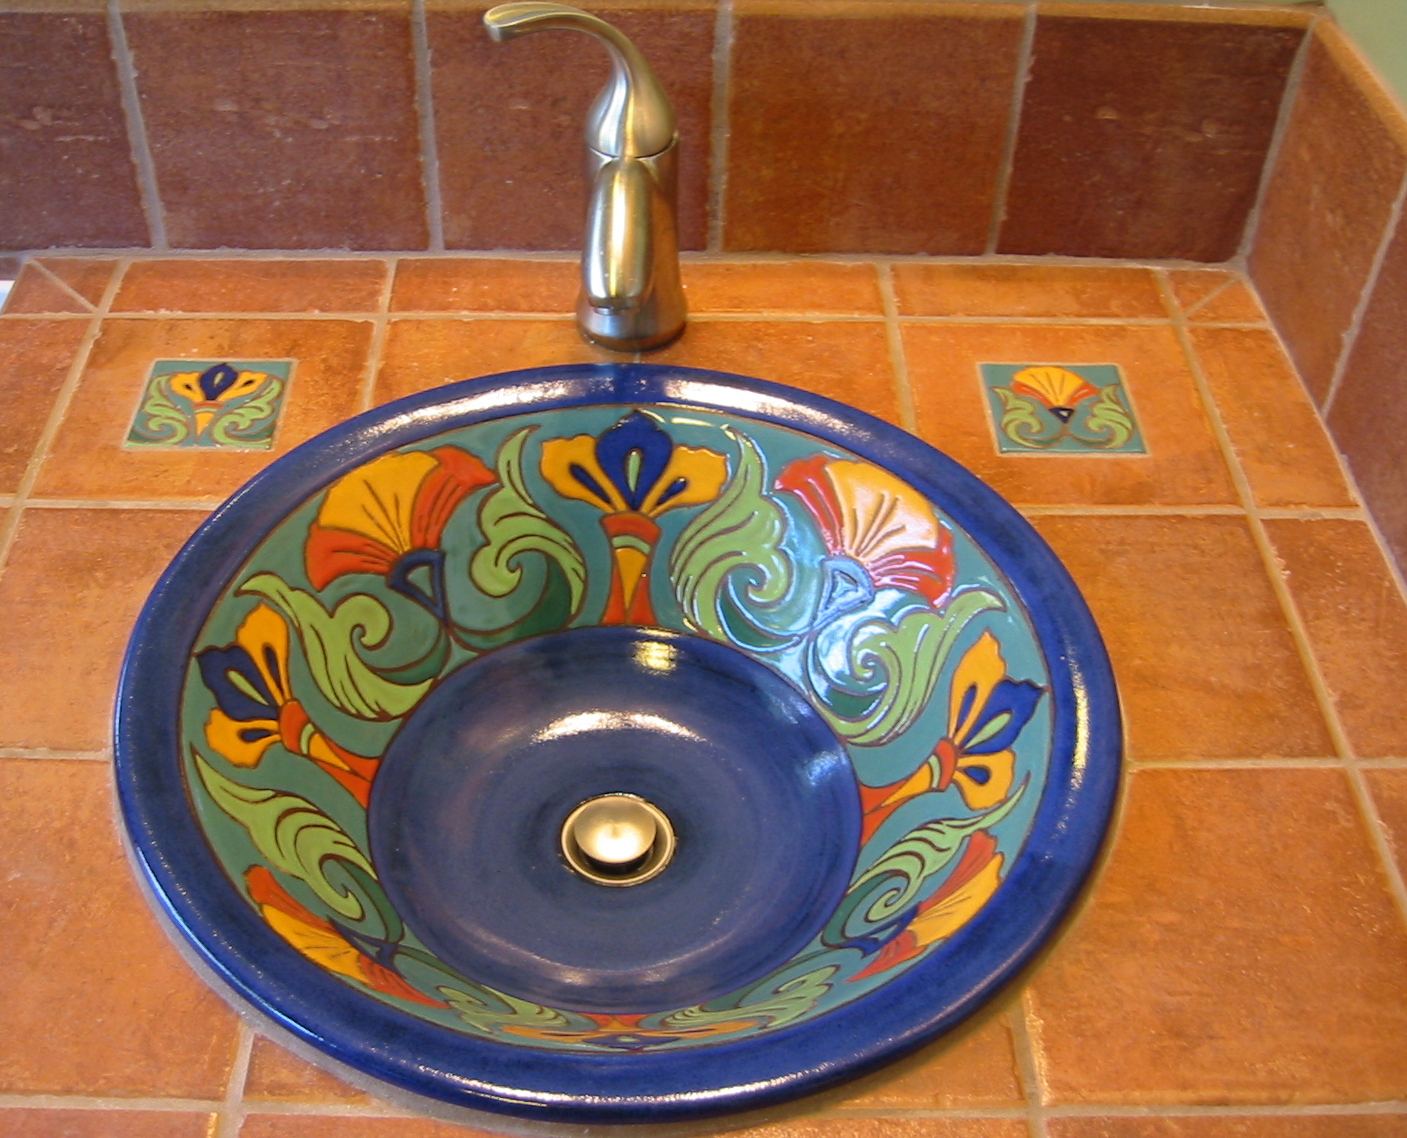 Ceramic Sink in California Cuerda Seca Style